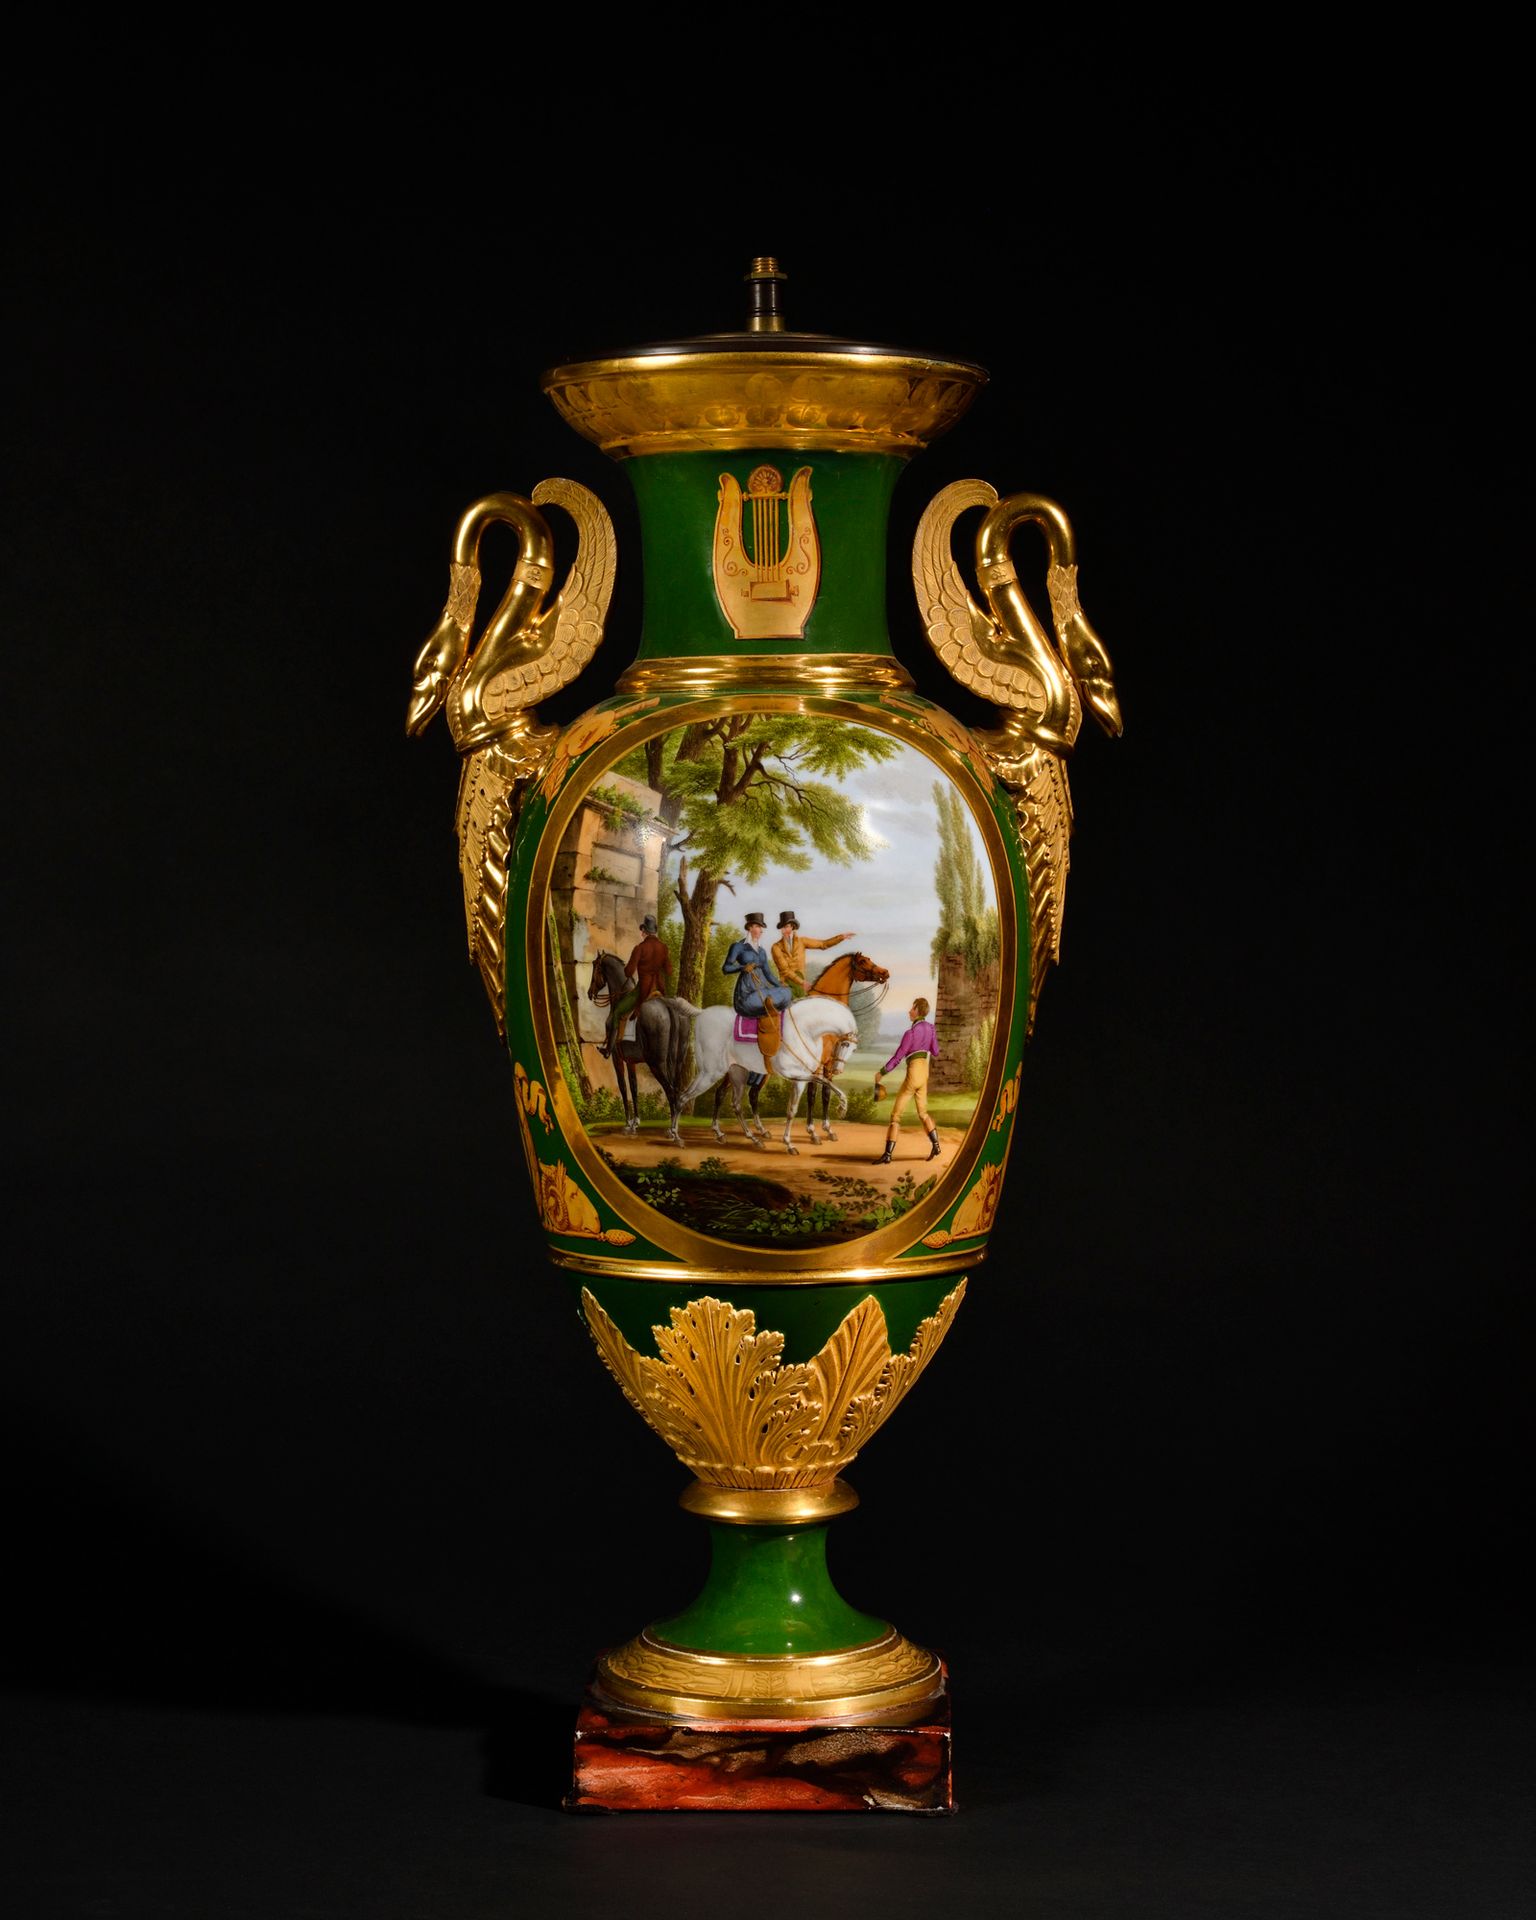 Null 巴黎瓷器大花瓶，呈柱状，背景为绿色和镀金，天鹅颈上有刺桐叶把手。

它的装饰是两个绘有椭圆形奖章的场景，一边是两个骑士，另一边是天空背景下的维纳斯和爱&hellip;